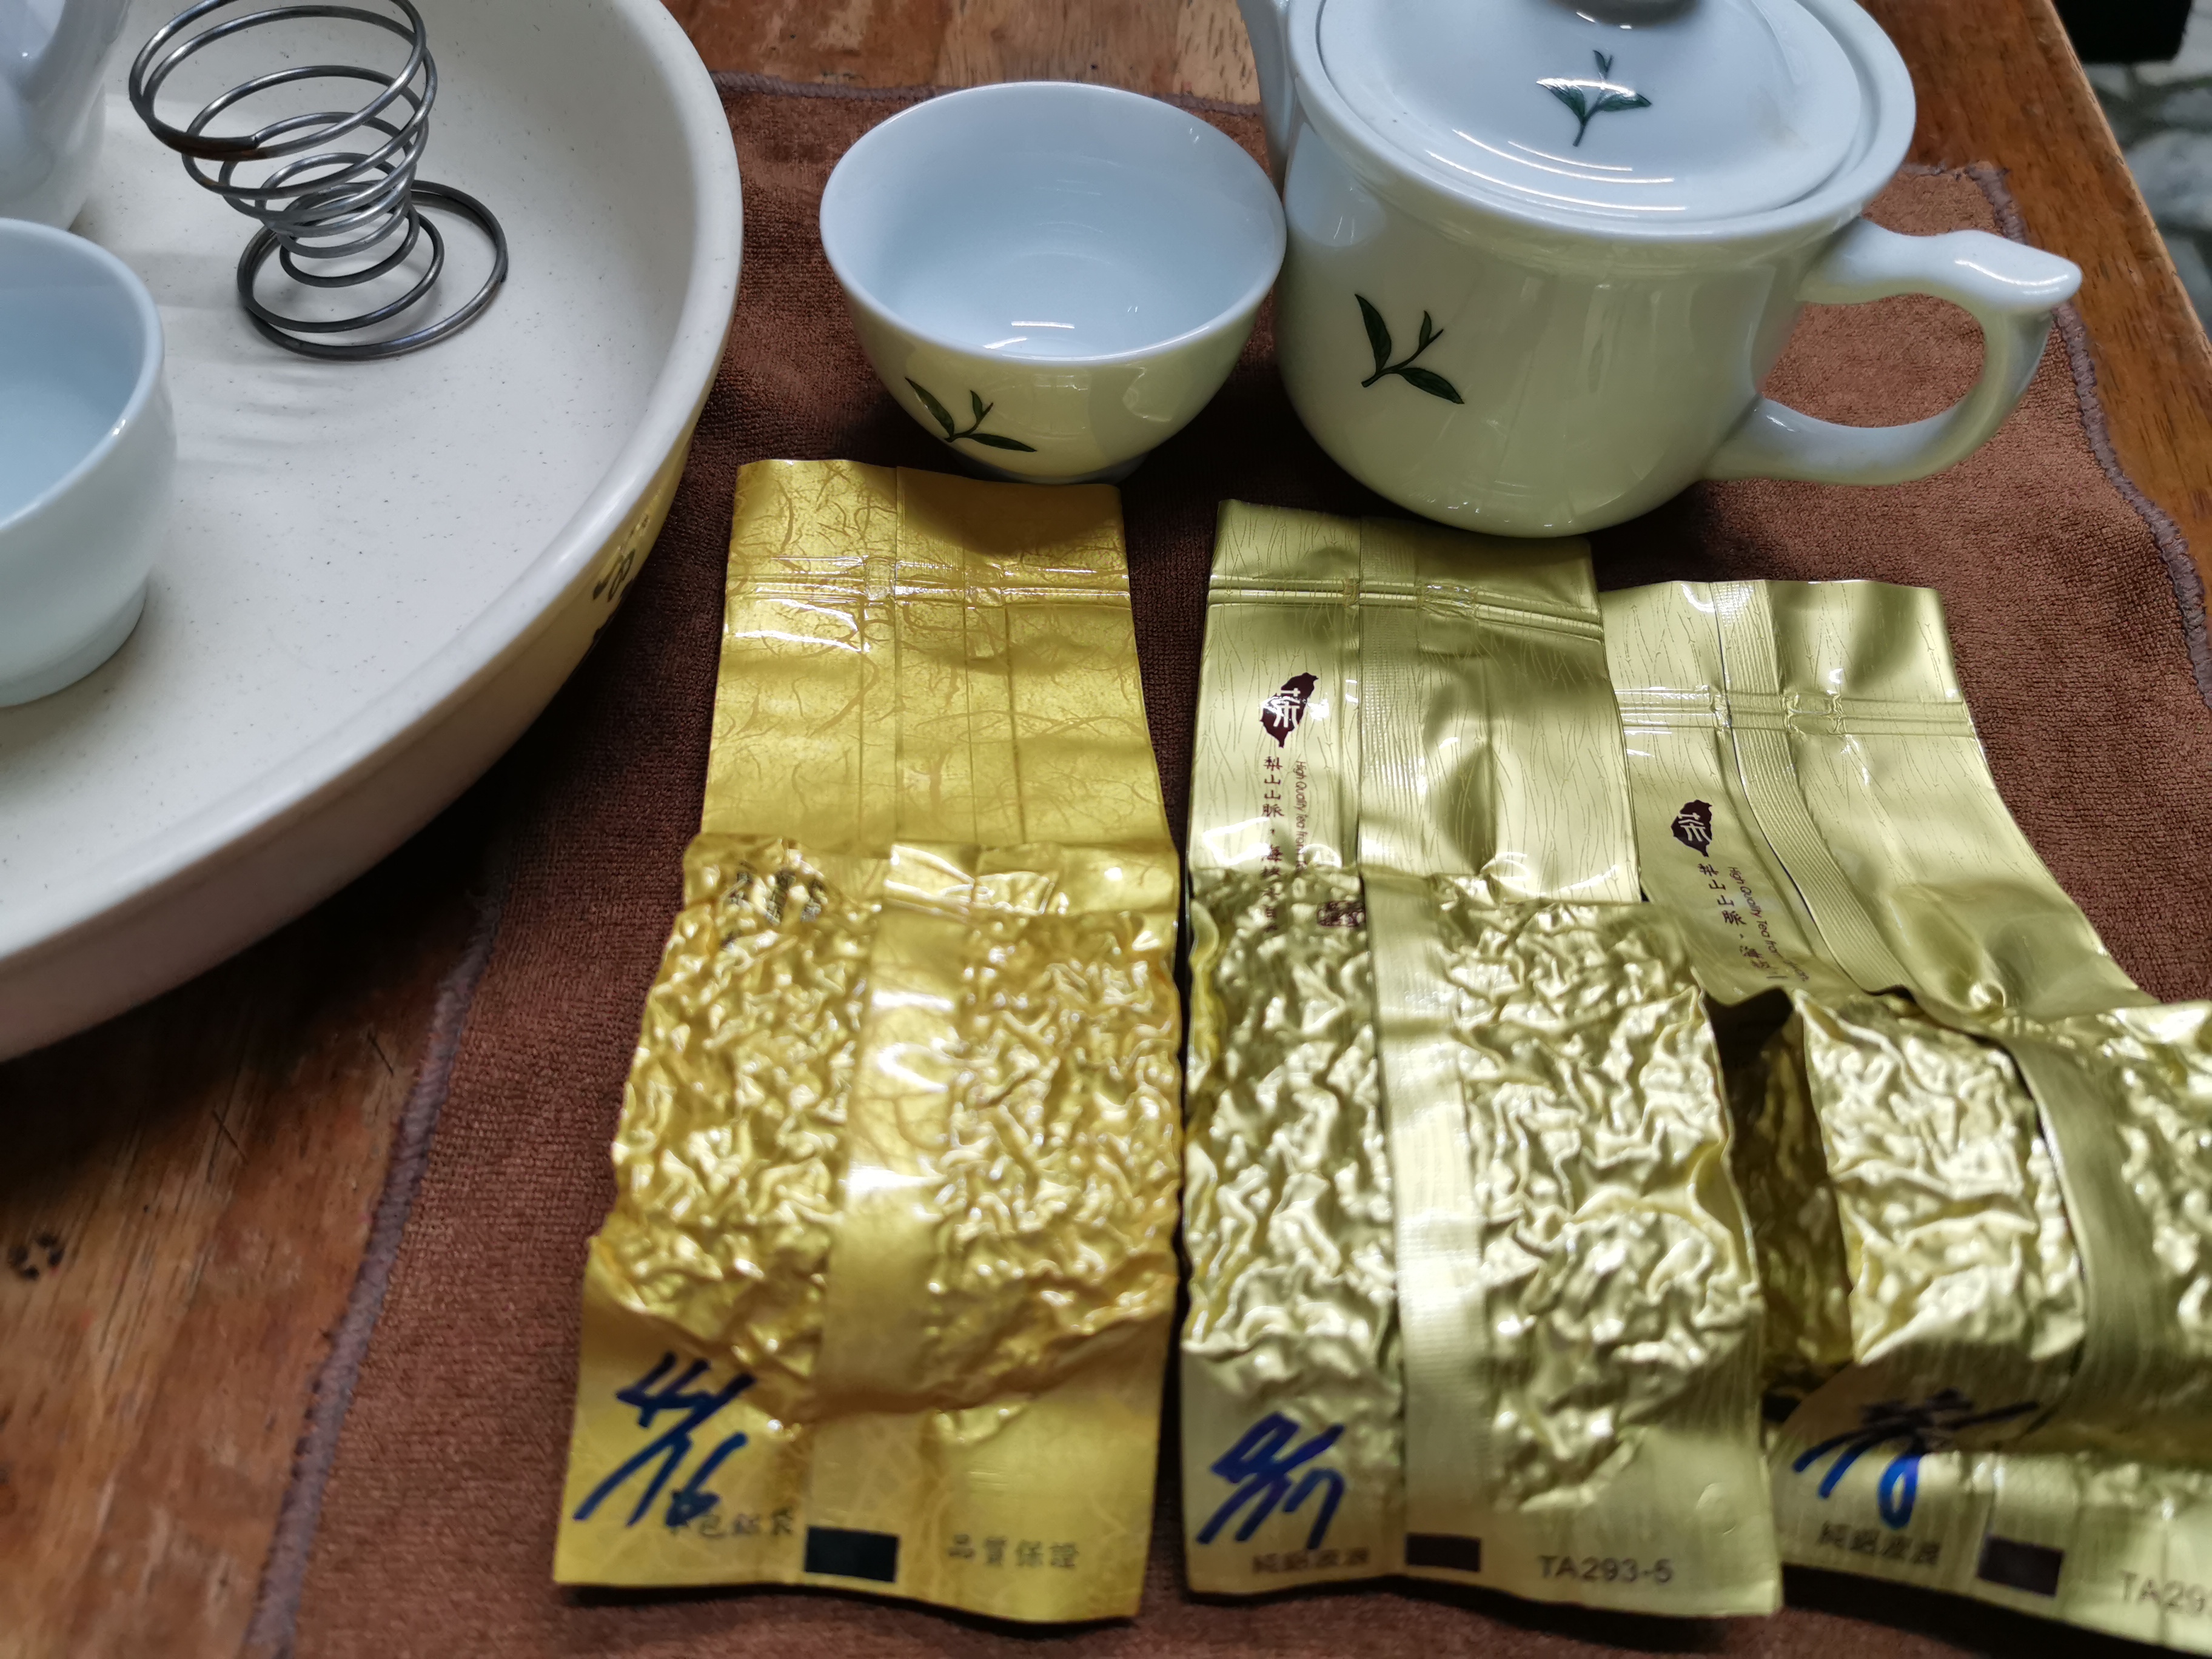 2019的黃金甘露茶(春茶)茶葉測試篇